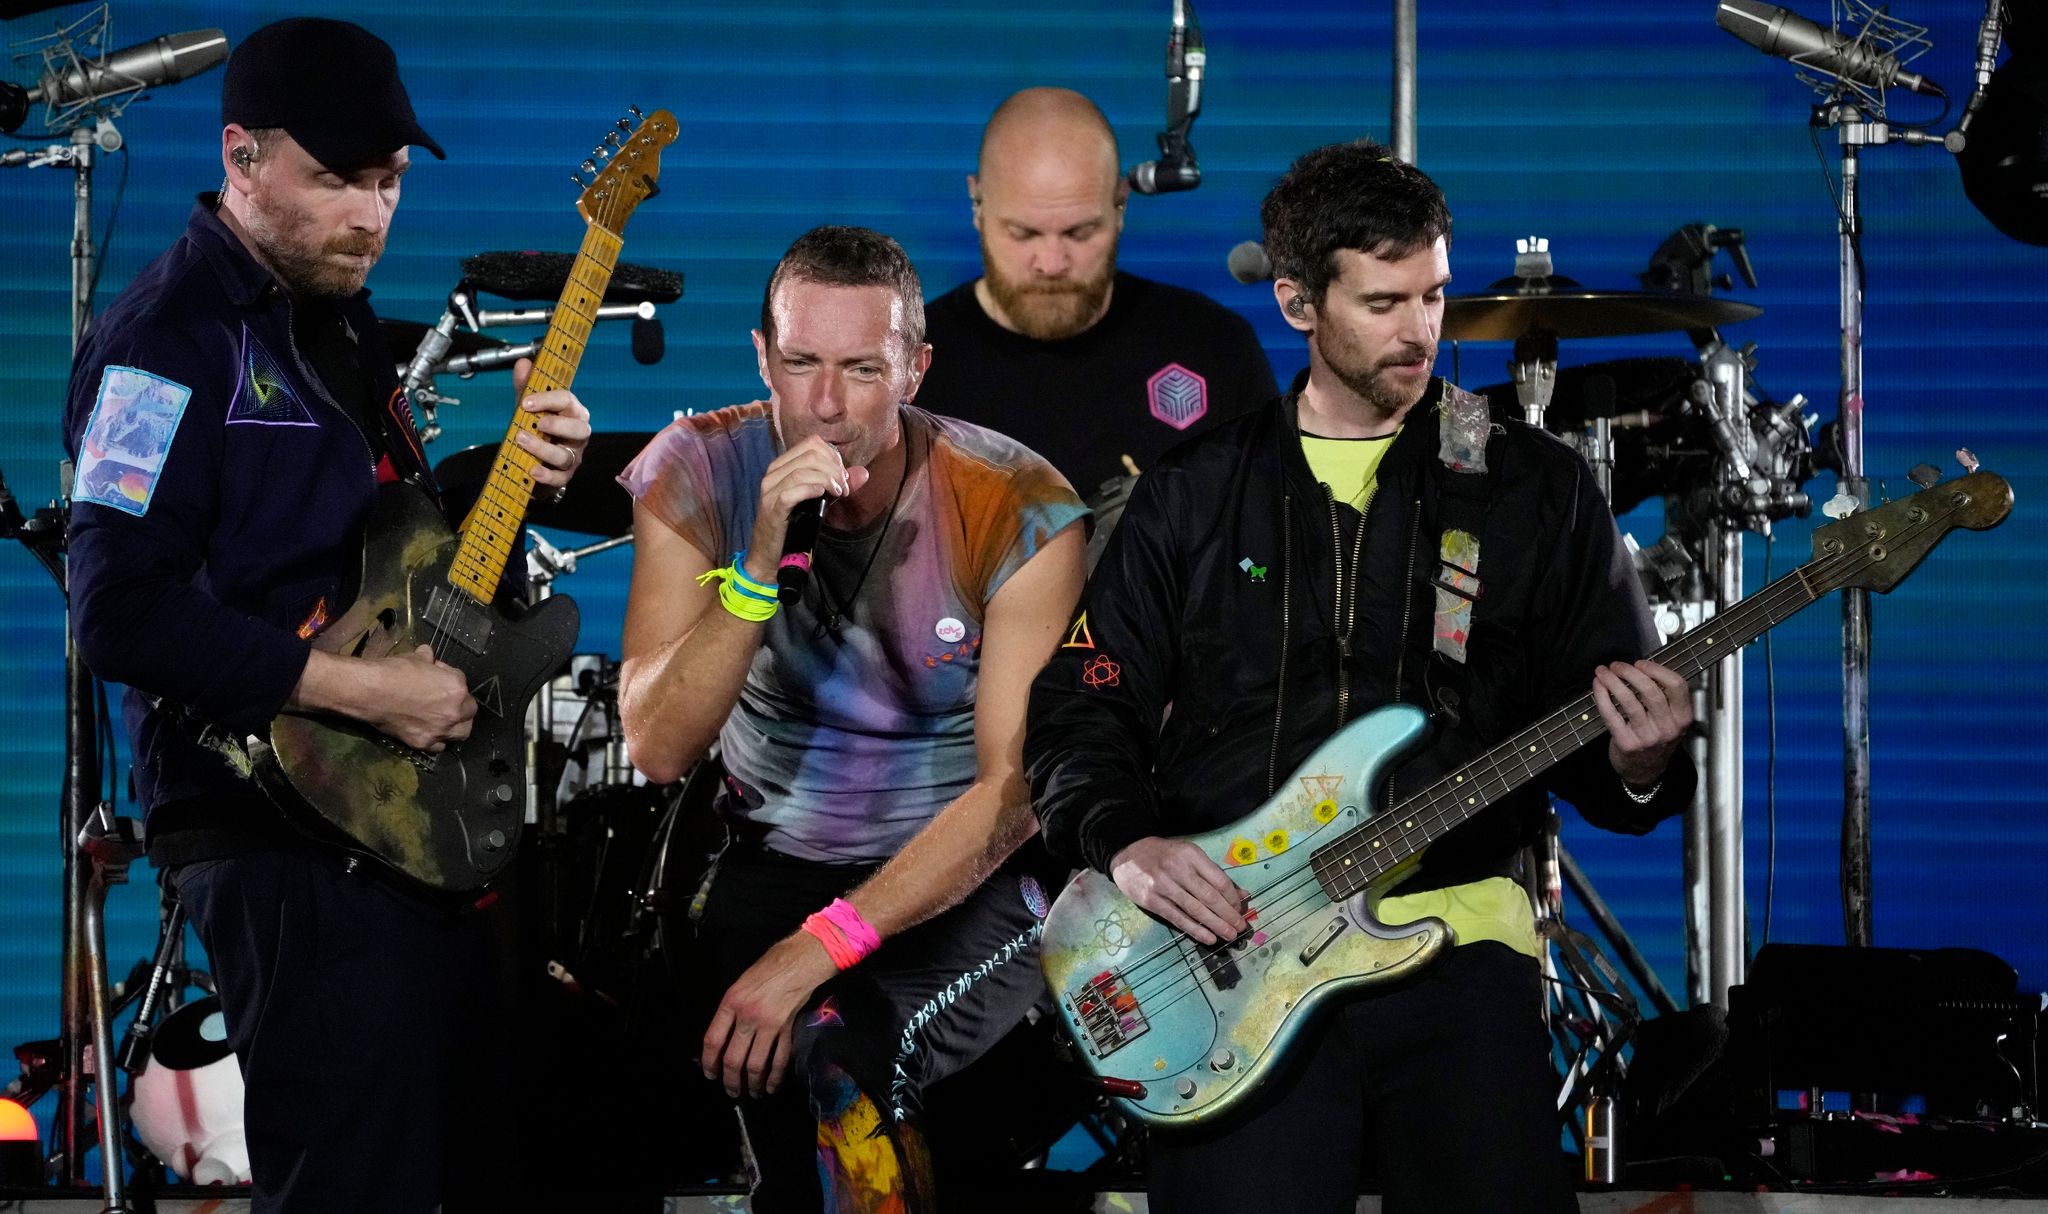 Das neue Album von Coldplay wird auch als Platte aus recycelten Plastikflaschen erscheinen. Foto: Chris Pizzello/Invision/AP/dpa